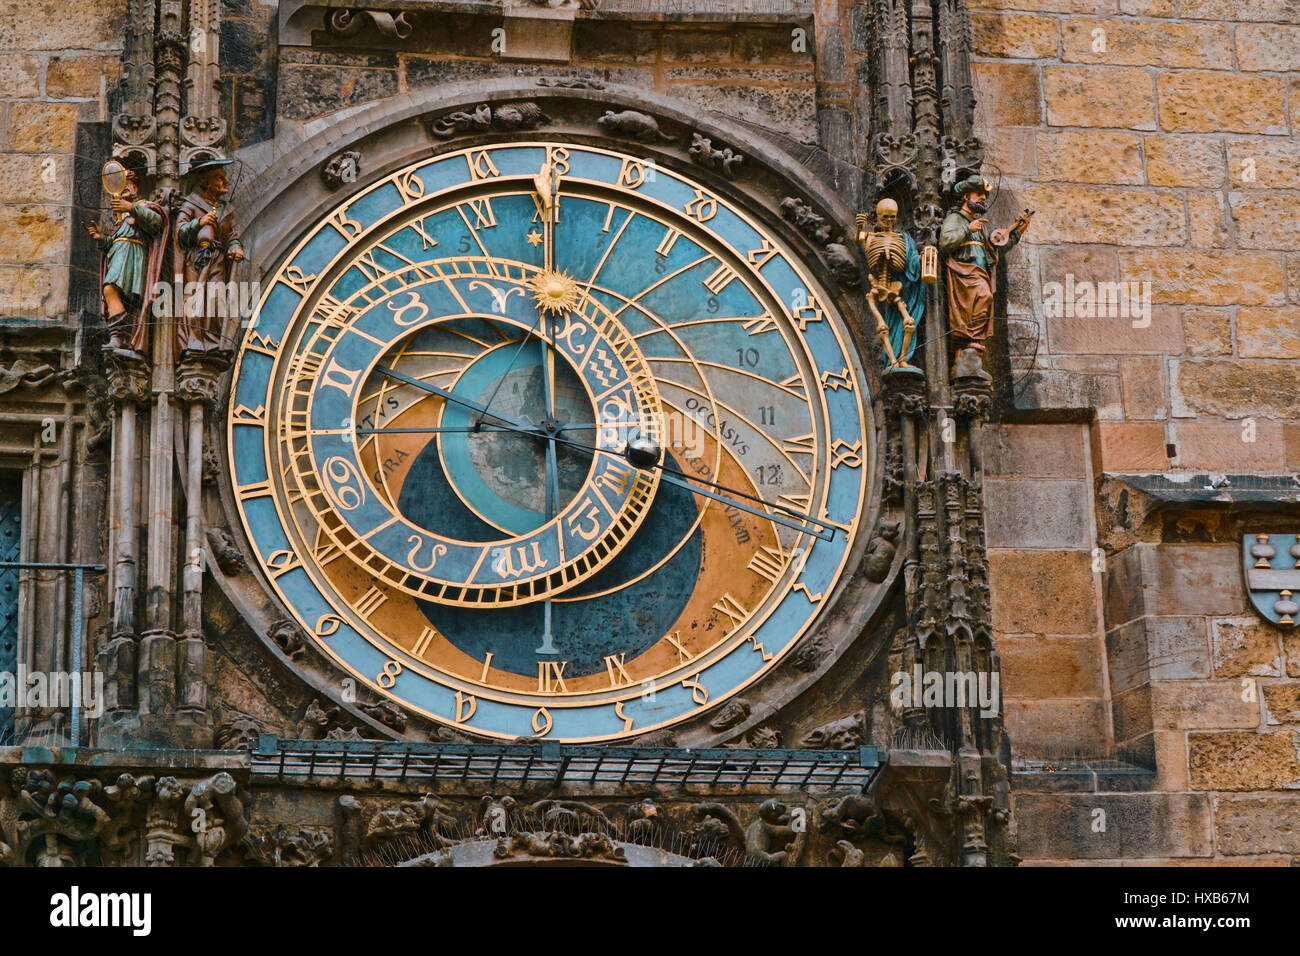 Eines der wichtigsten Sehenswürdigkeiten in Prag die astronomische Uhr am Altstädter Ring Stockfoto